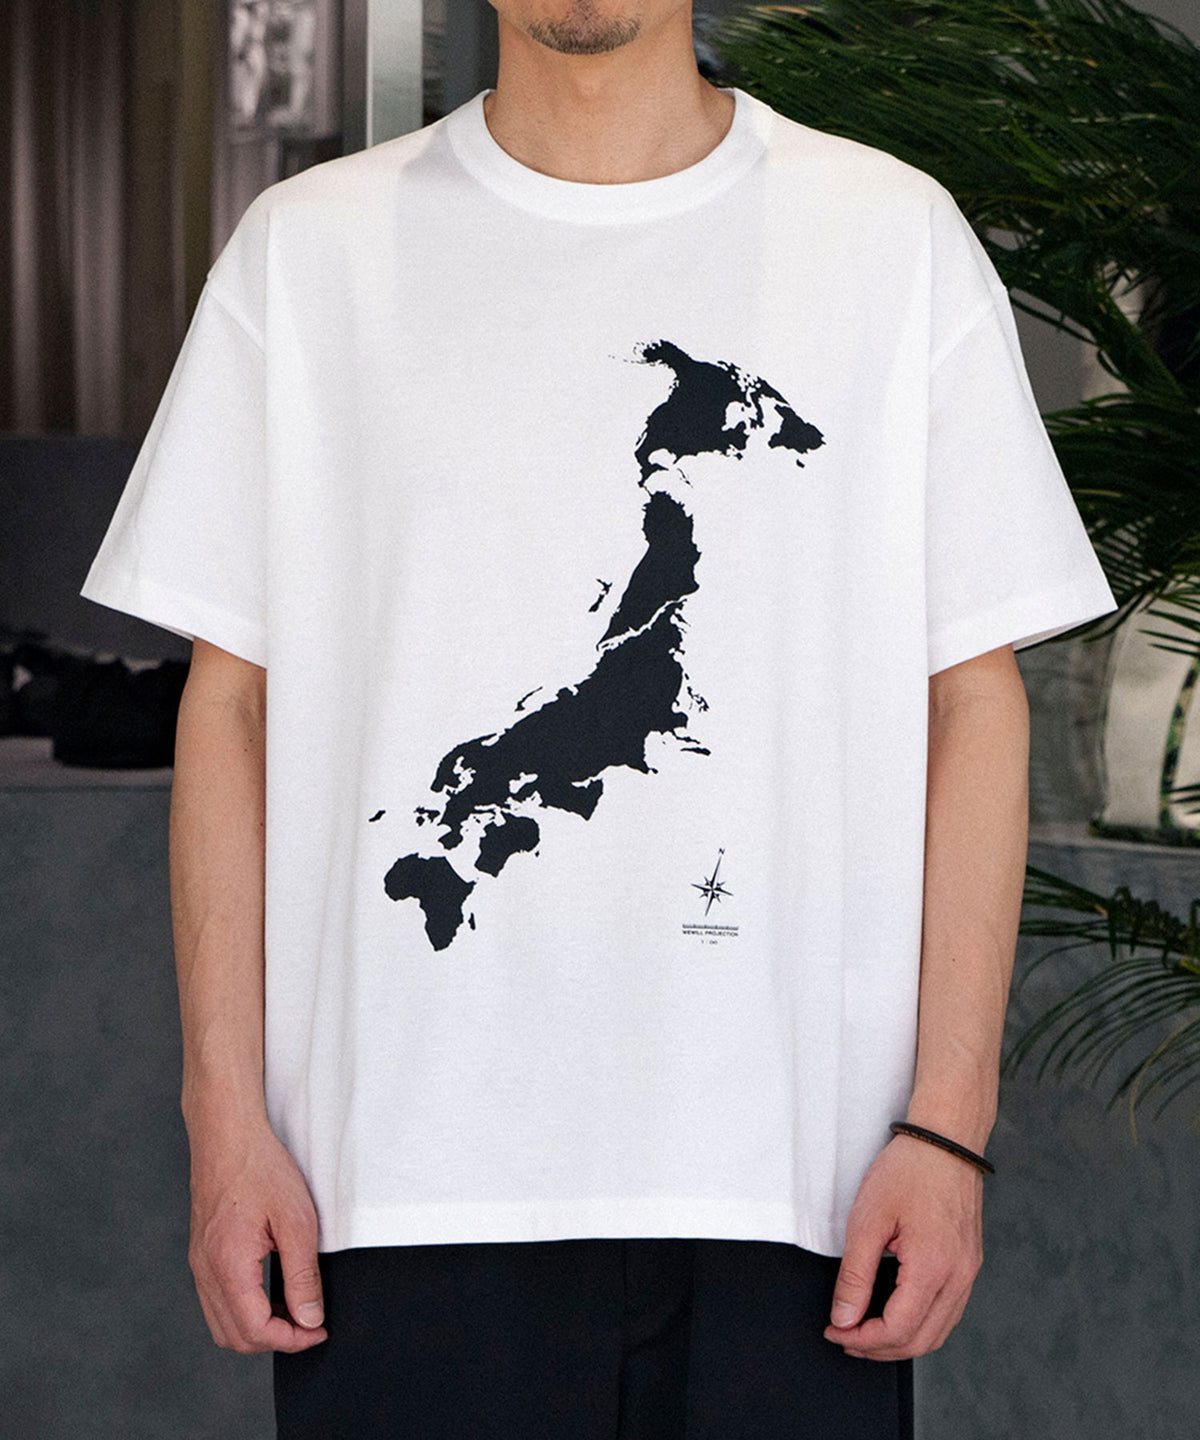 Map T-Shirt